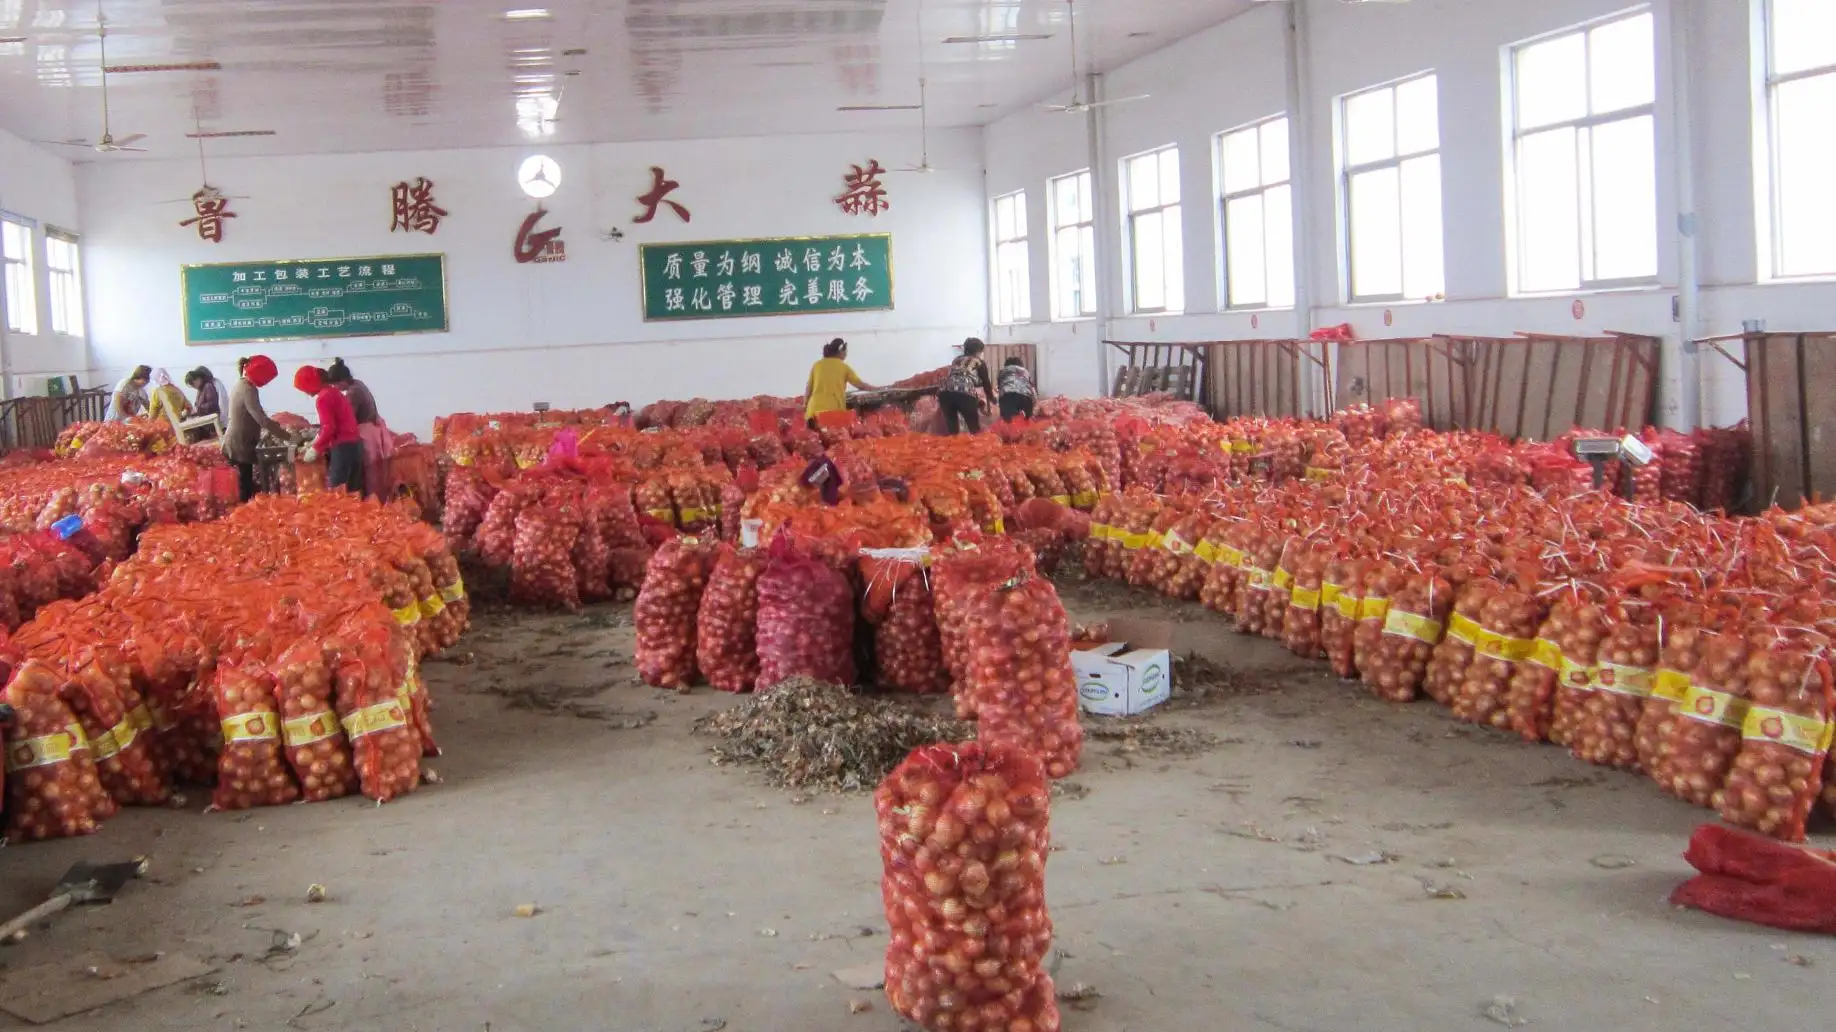 محصول جديد من البصل الهولندي الطازج ، سعر البصل الأحمر والأصفر للطن الواحد بكميات كبيرة في الصين ، البصل الصيني الطازج للبيع